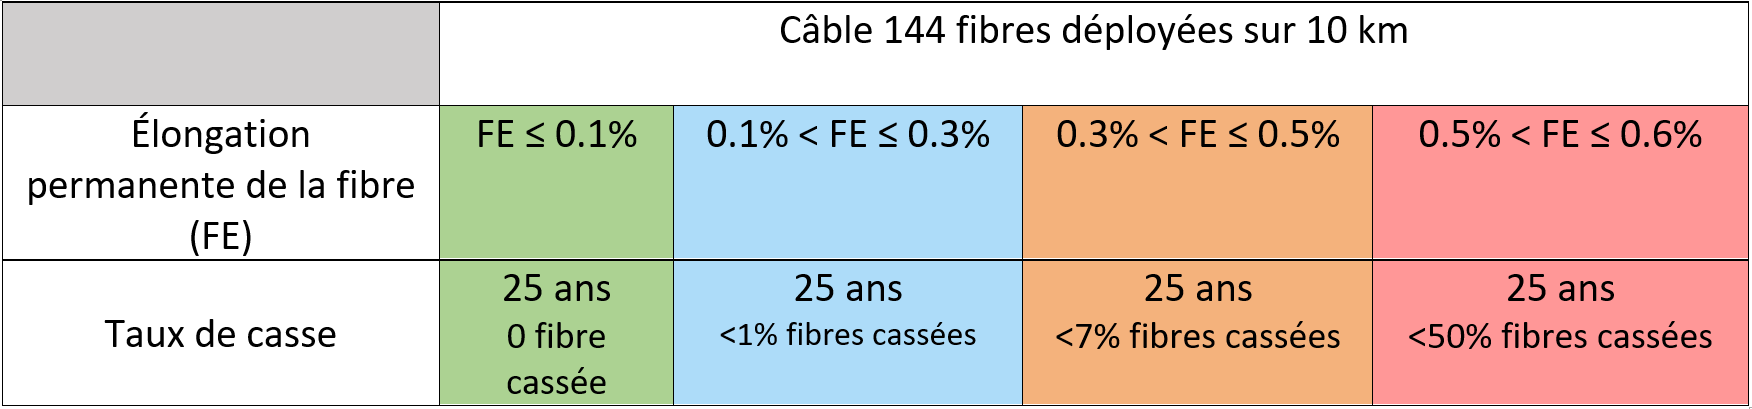 Tableau de probabilités de taux de casse de la fibre en fonction de son élongation